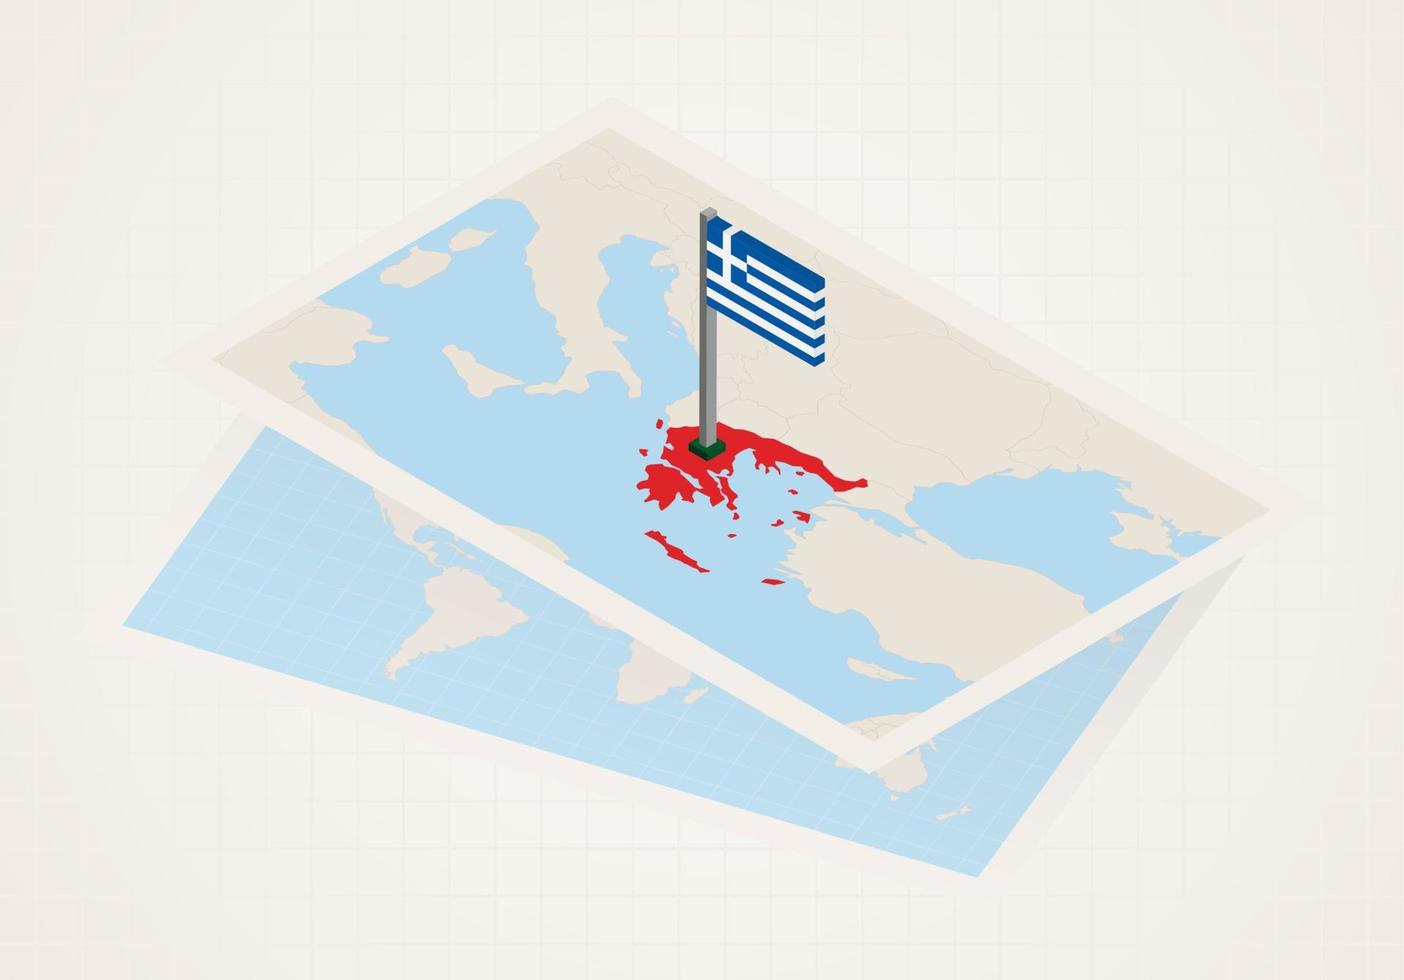 grecia seleccionada en el mapa con bandera isométrica de grecia. vector